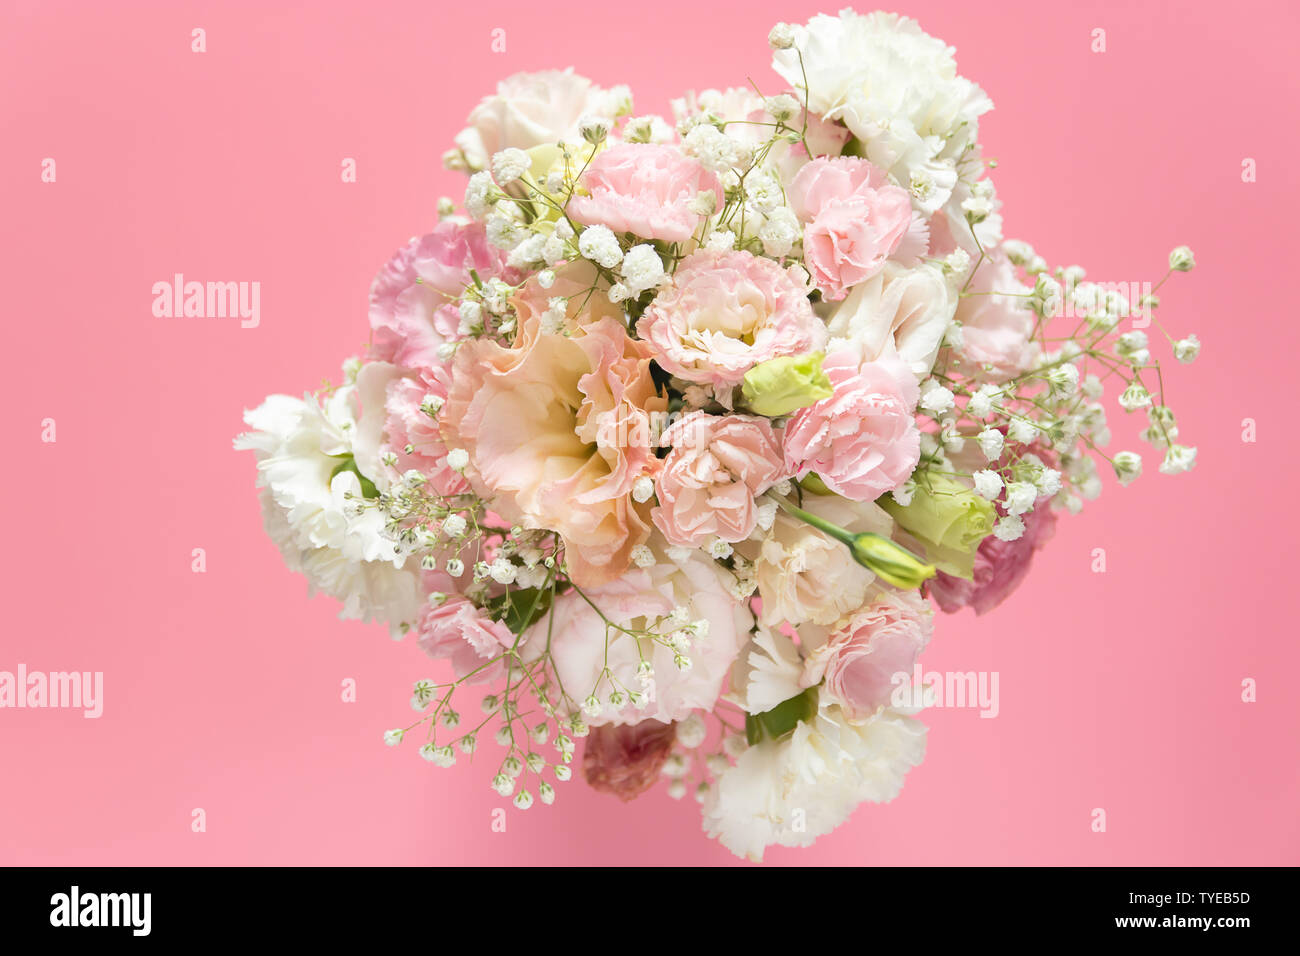 Blick von oben auf die wunderschönen, romantischen Blumenstrauß frische Blumen auf rosa Hintergrund mit Kopie Raum Stockfoto